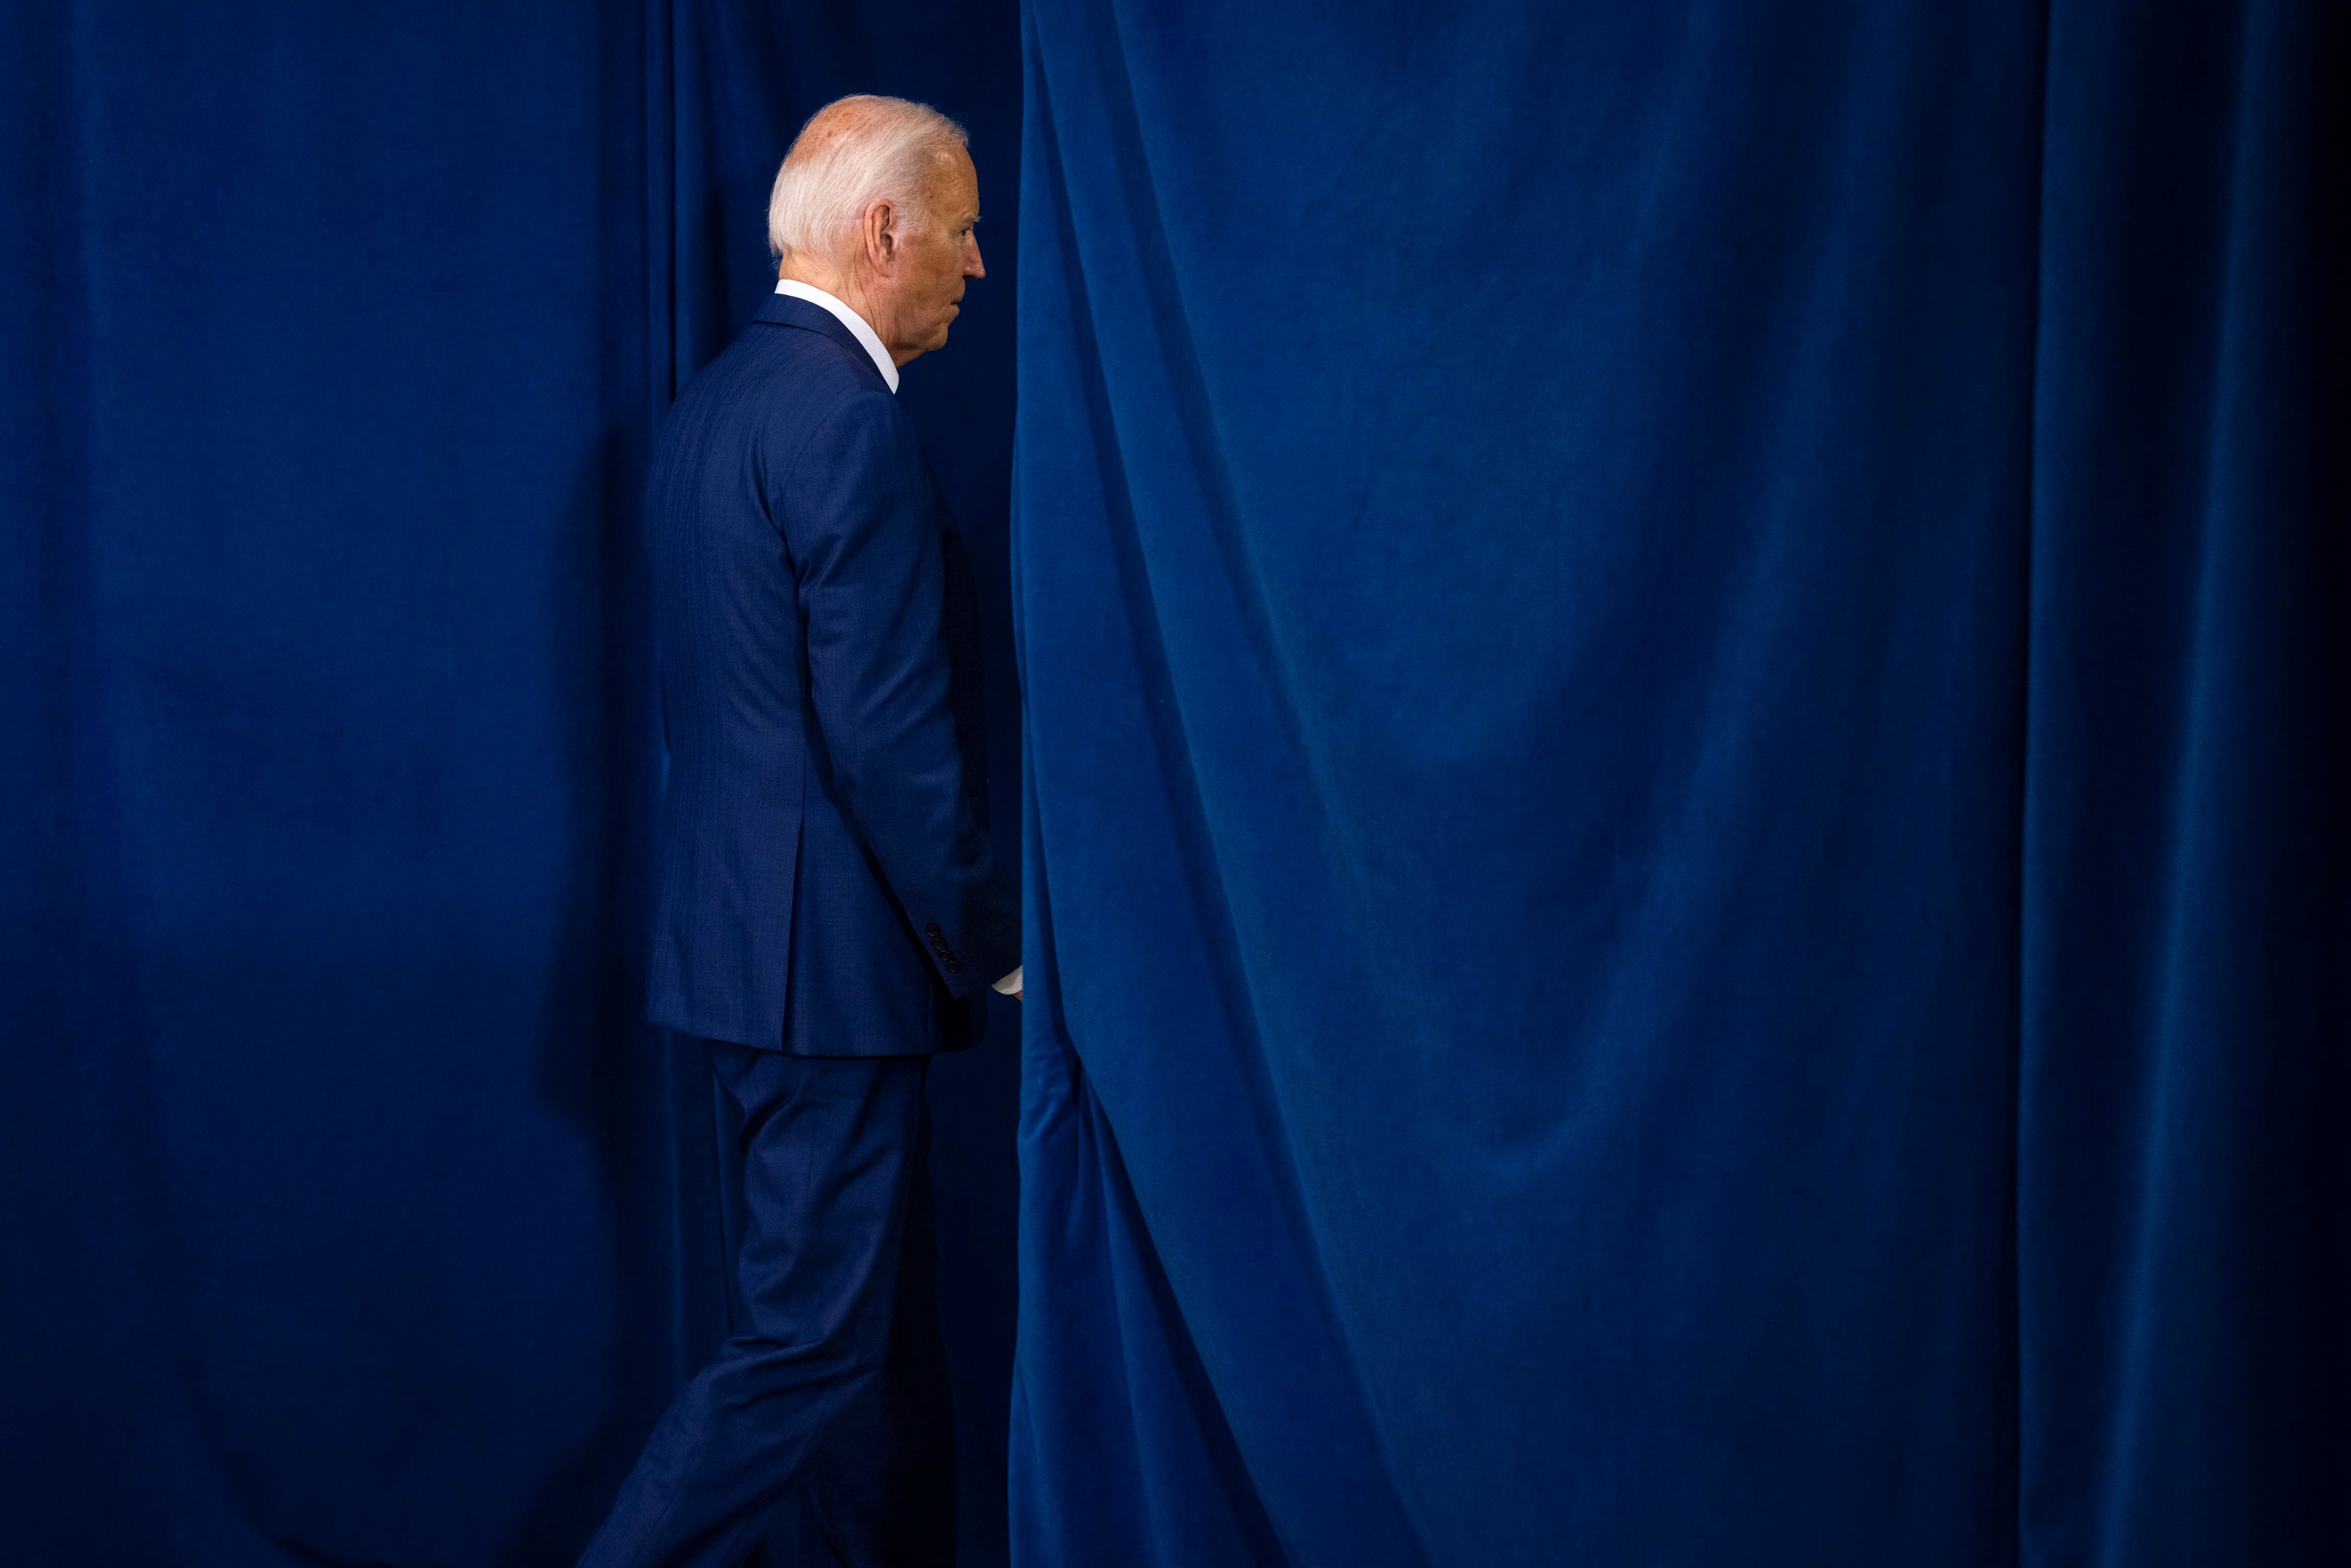 Retiro de Joe Biden vuelve a poner al Partido Demócrata en la carrera, señala analista